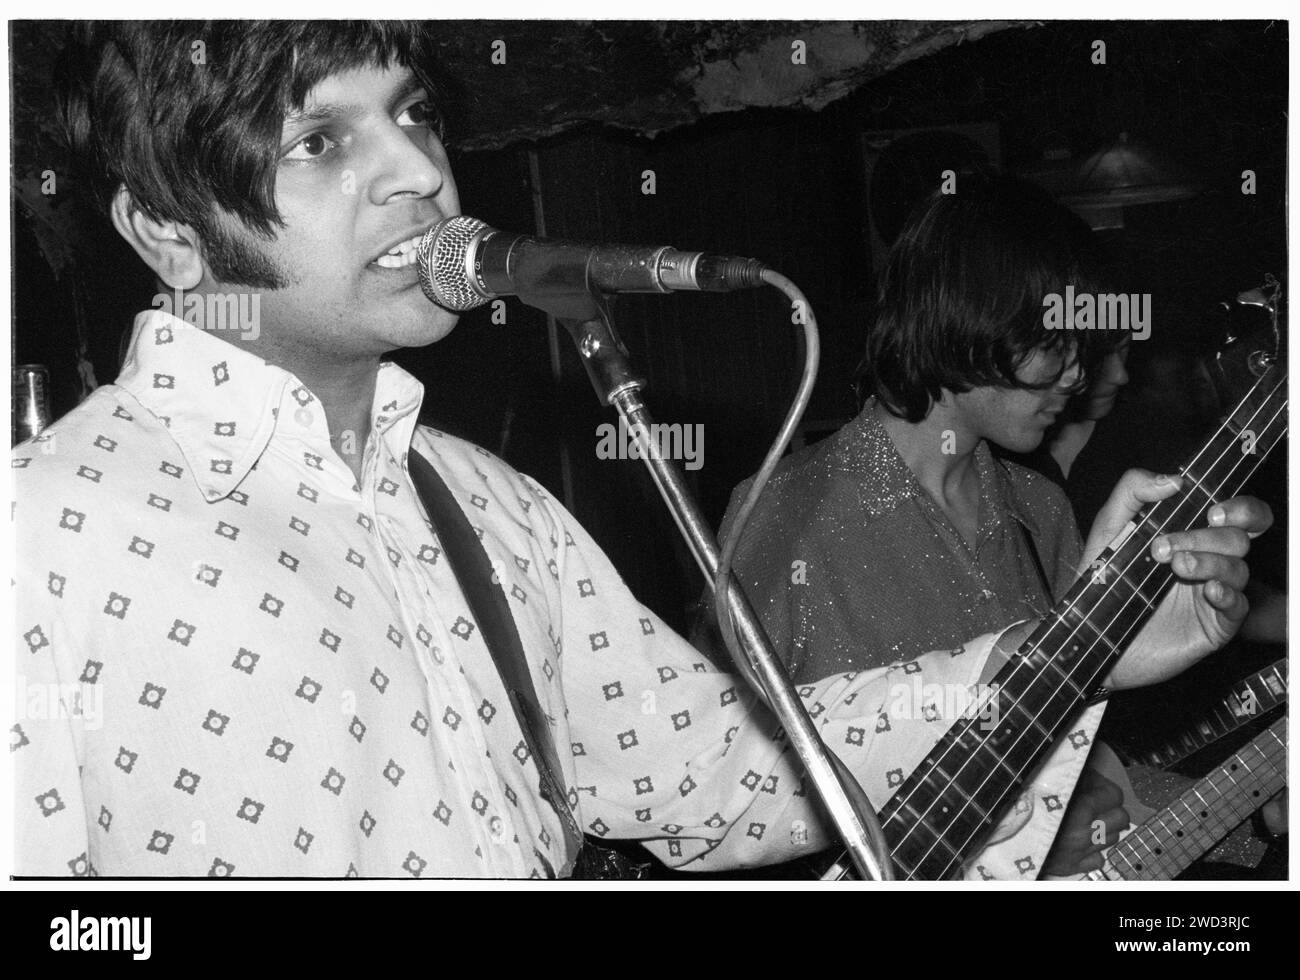 Tjinder Singh di Cornershop suona dal vivo al leggendario TJ's di Newport, Galles, Regno Unito il 31 gennaio 1994. Foto: Rob Watkins. INFO: Cornershop, formatosi nel 1991, è un gruppo indie rock britannico guidato da Tjinder Singh e Ben Ayres. Rinomati per la loro fusione di elementi indie rock, alternative e musica indiana, hanno raggiunto il successo mainstream con il successo "Brimful of Asha", che riflette il loro approccio musicale eclettico e innovativo. Foto Stock